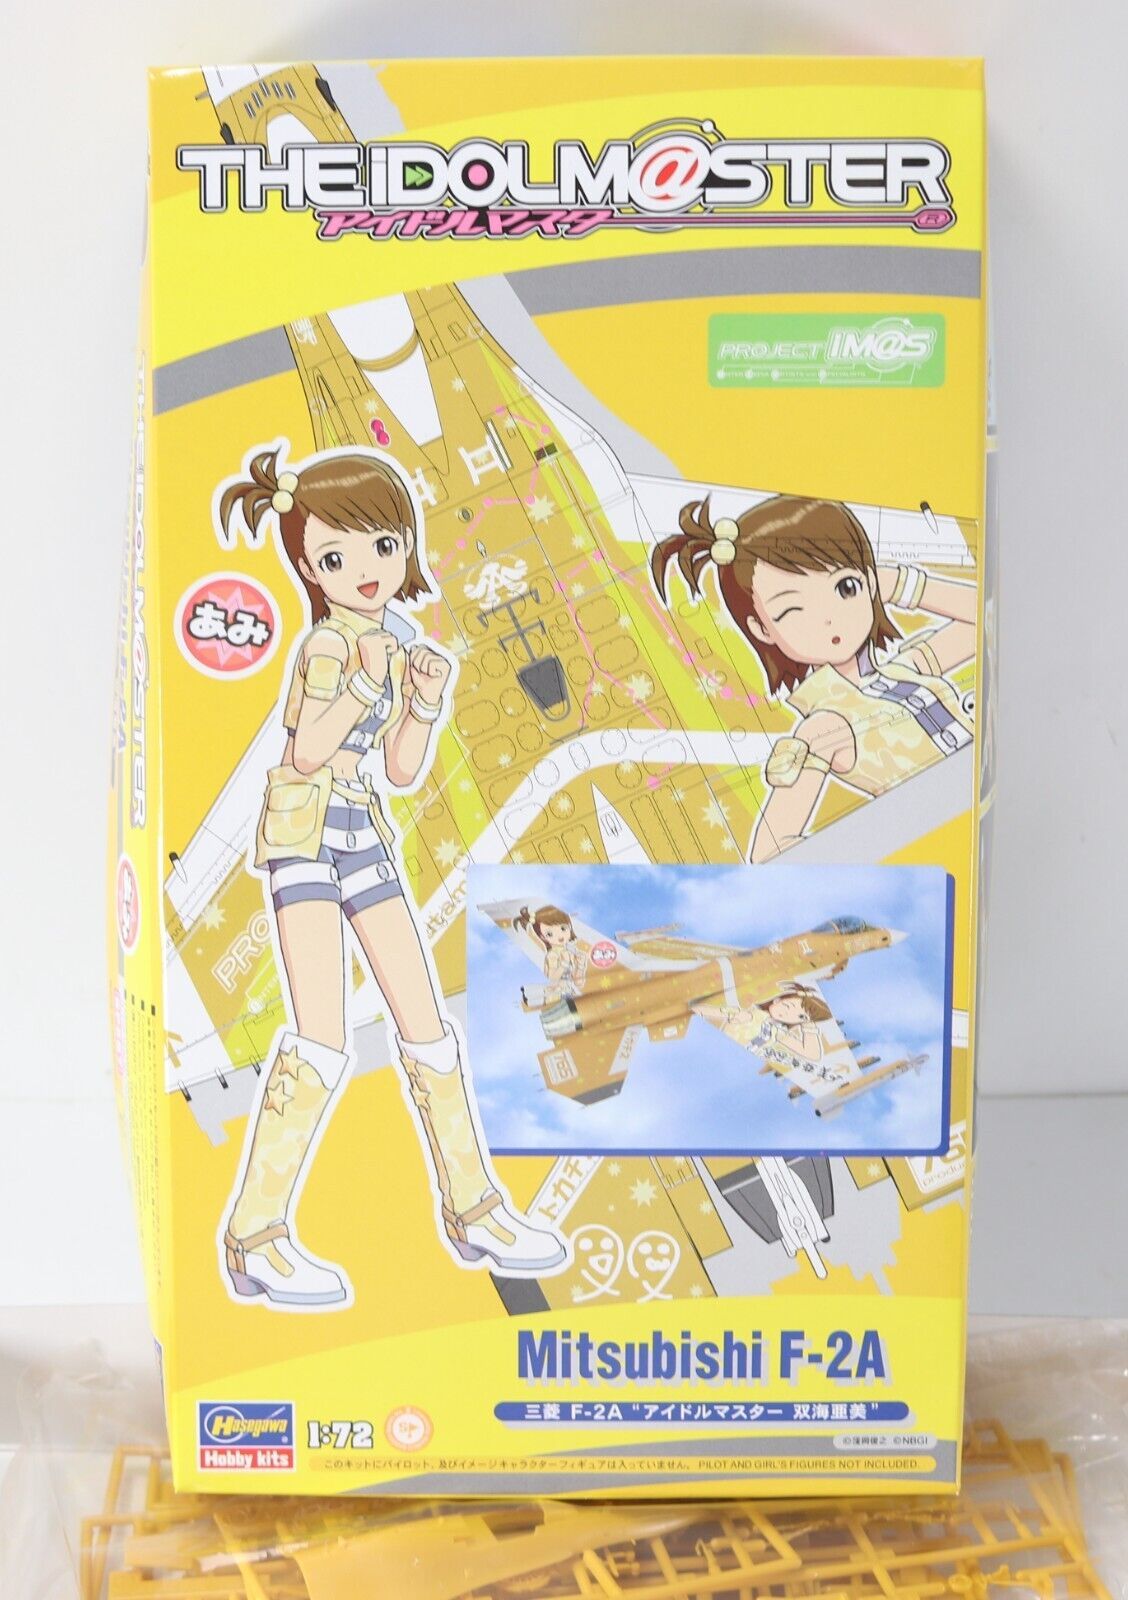 Hasegawa Mitsubishi F-2A The Idolmaster Anime 1:72 - No Decals or Manual 51967 - $44.99